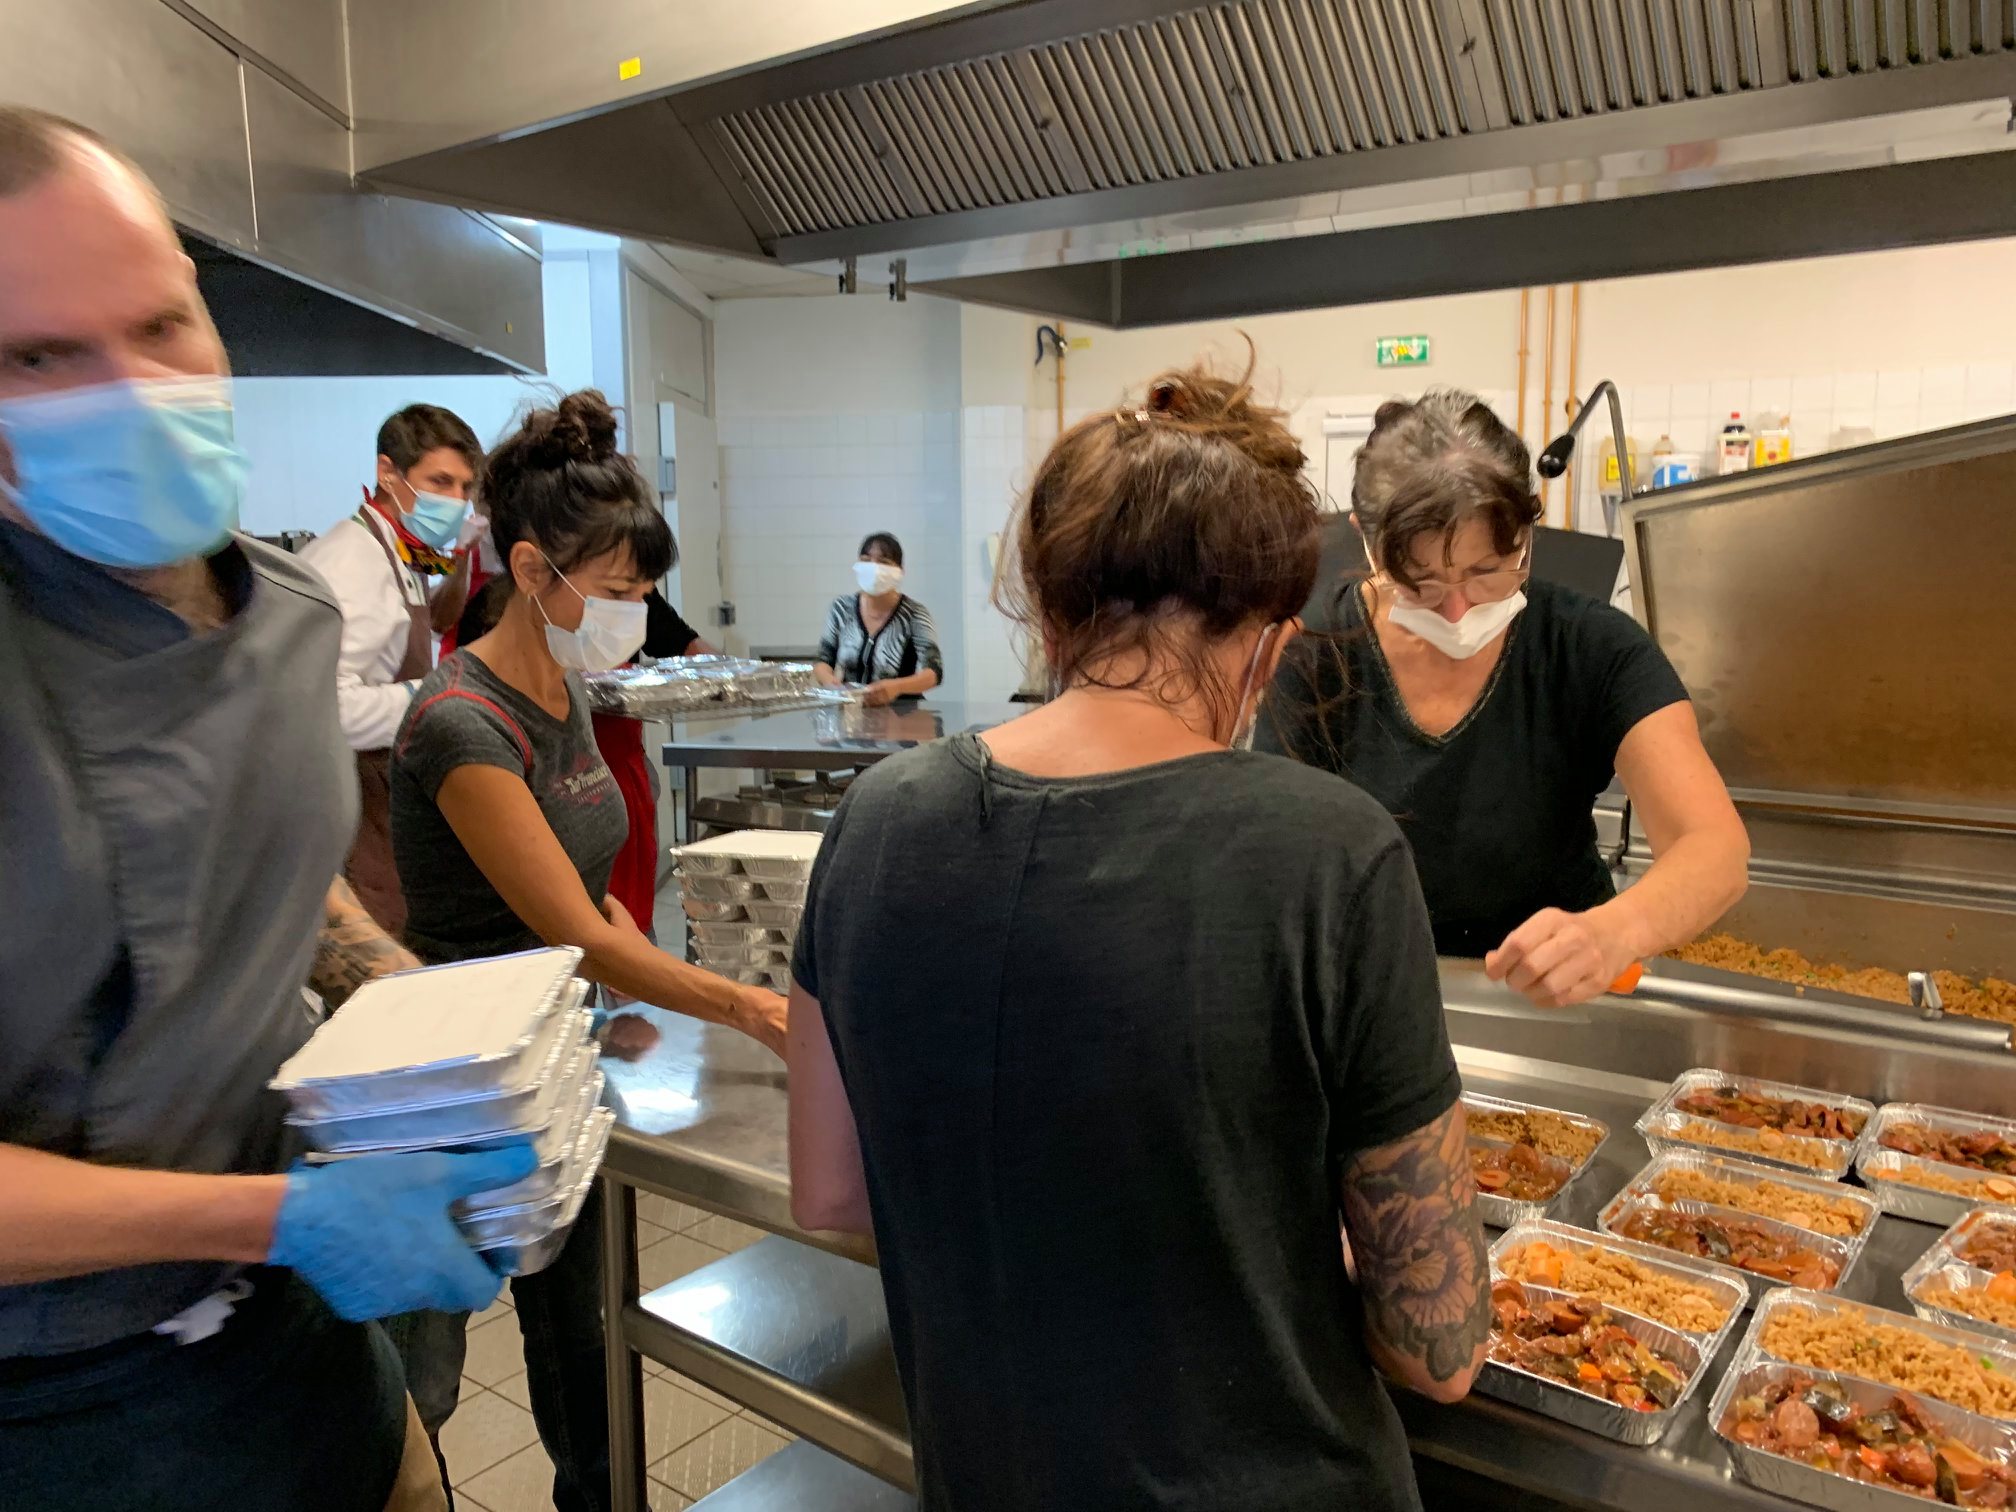 Elan de solidarité en Nouvelle-Calédonie : Les chefs cuisinent pour les plus démunis